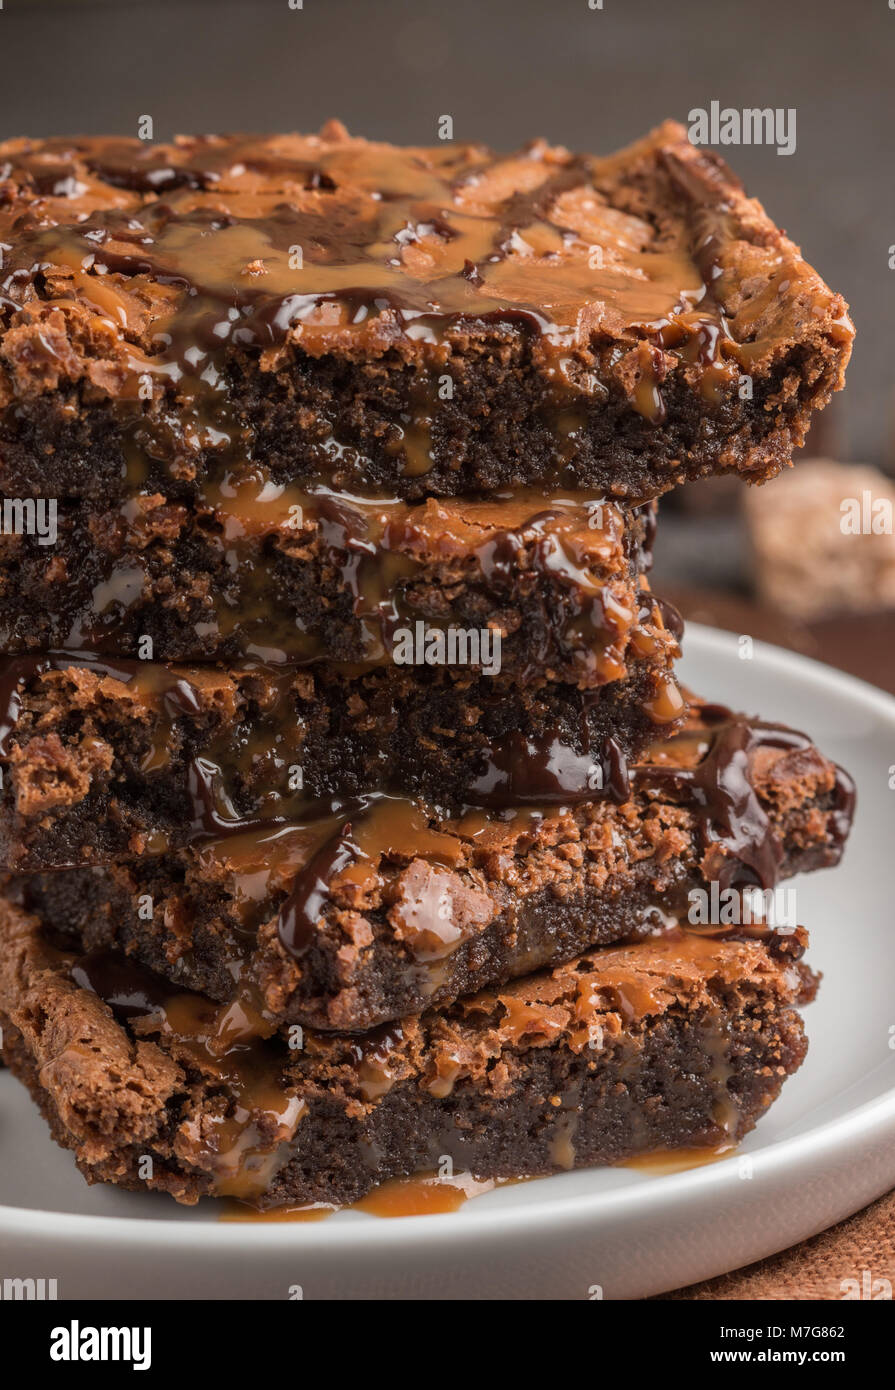 Brownie. Des gâteaux au chocolat et caramel. American dessert. Selective focus Banque D'Images